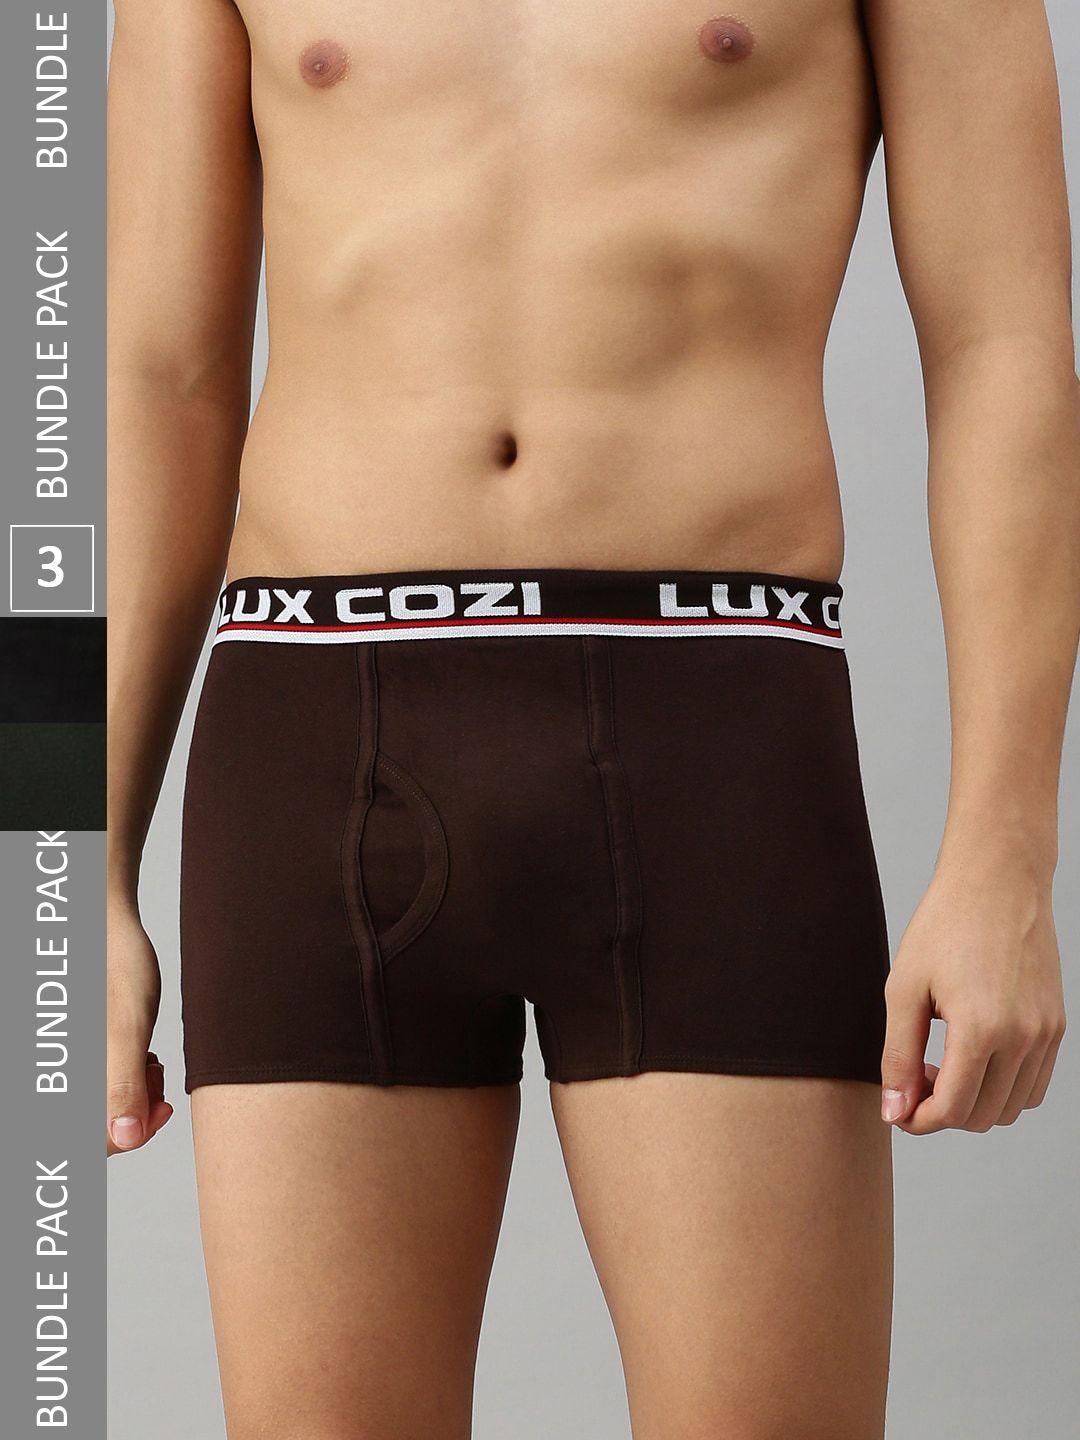 lux cozi men pack of 3 mid-rise trunks